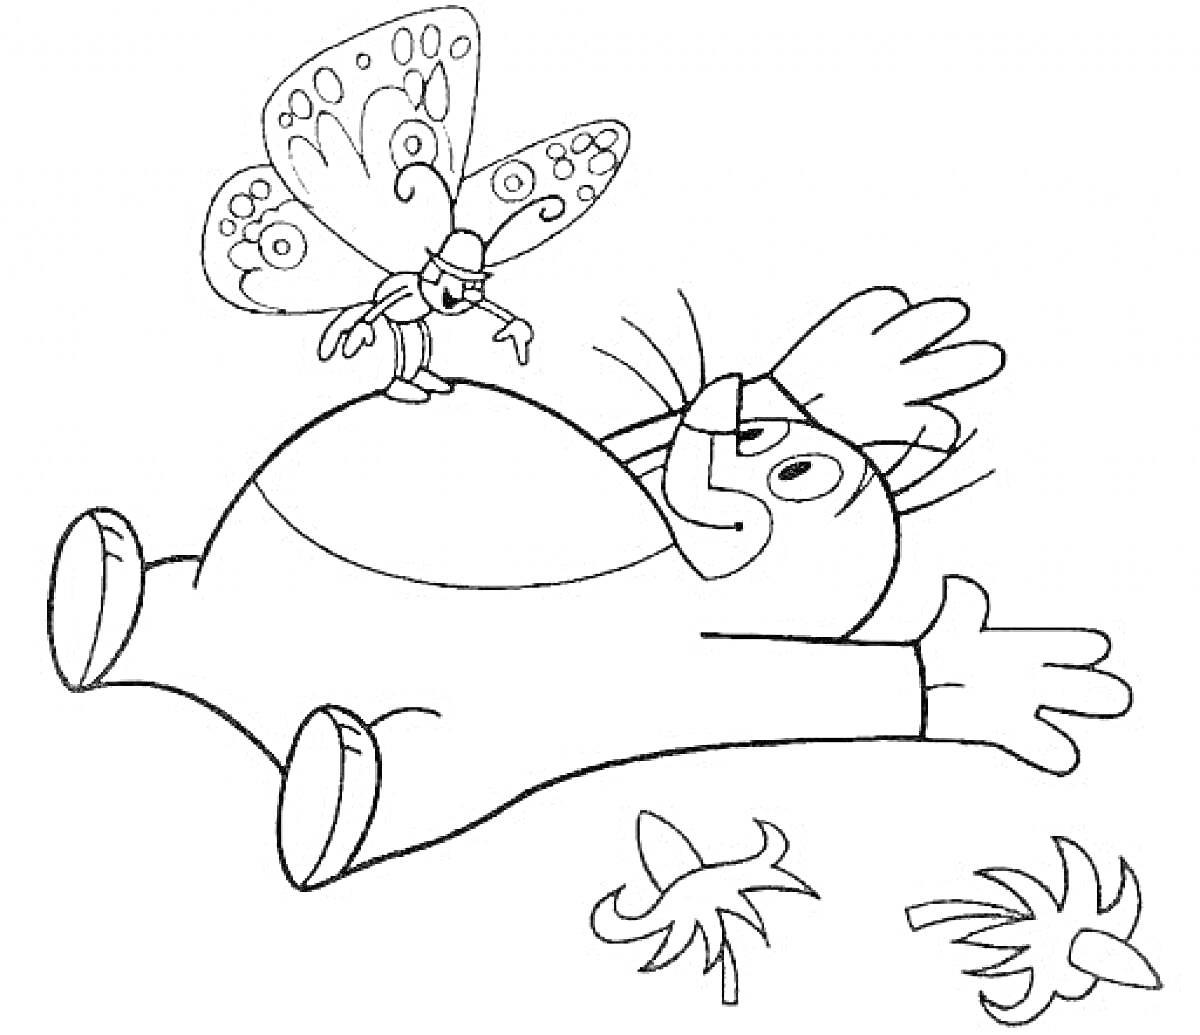 Раскраска Крот, лежащий на спине с бабочкой на животе и тремя цветами рядом